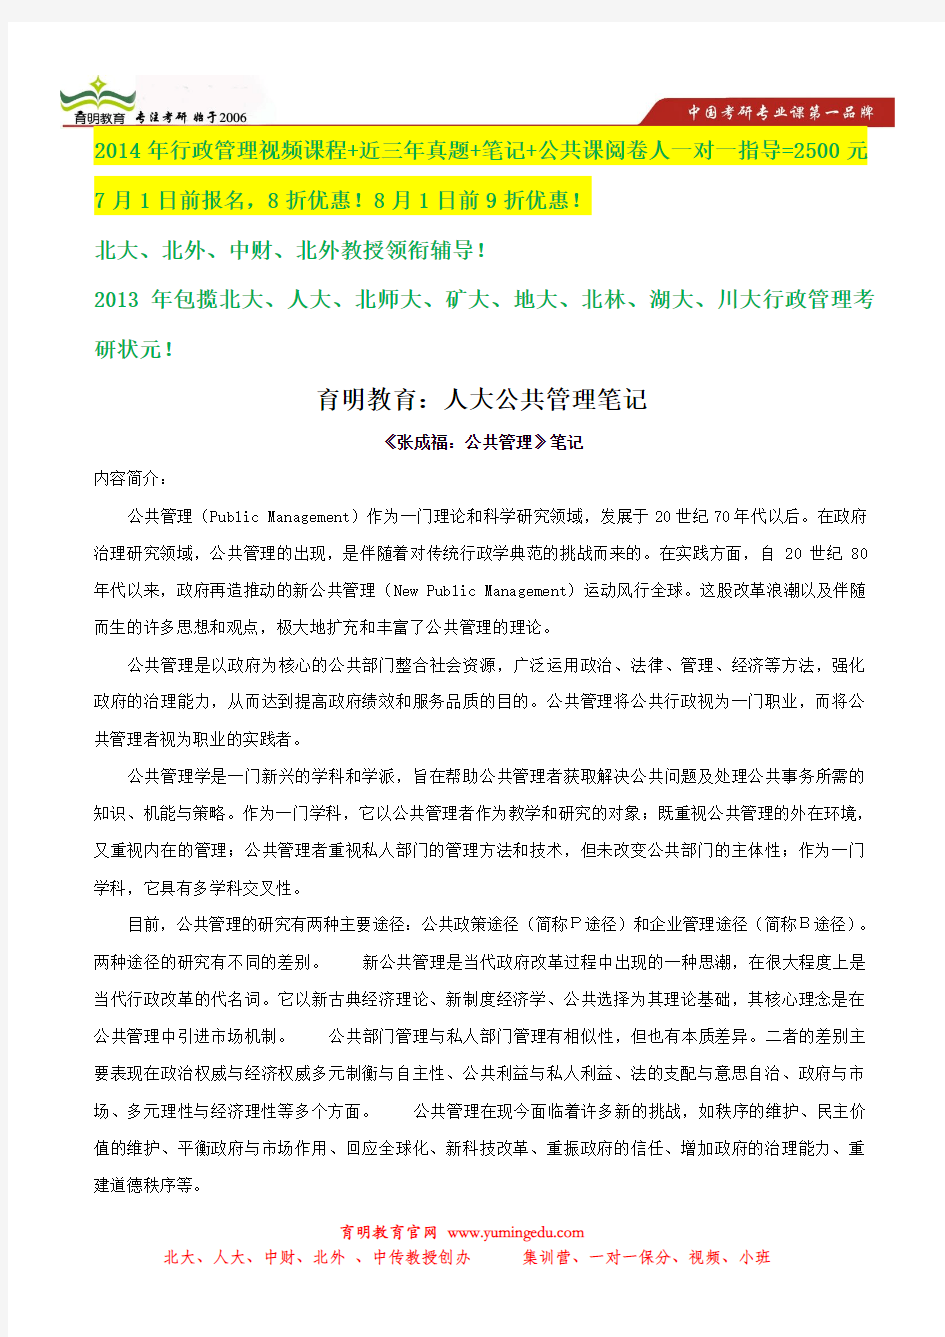 张成福 公共管理学状元笔记-中国人民大学行政管理考研